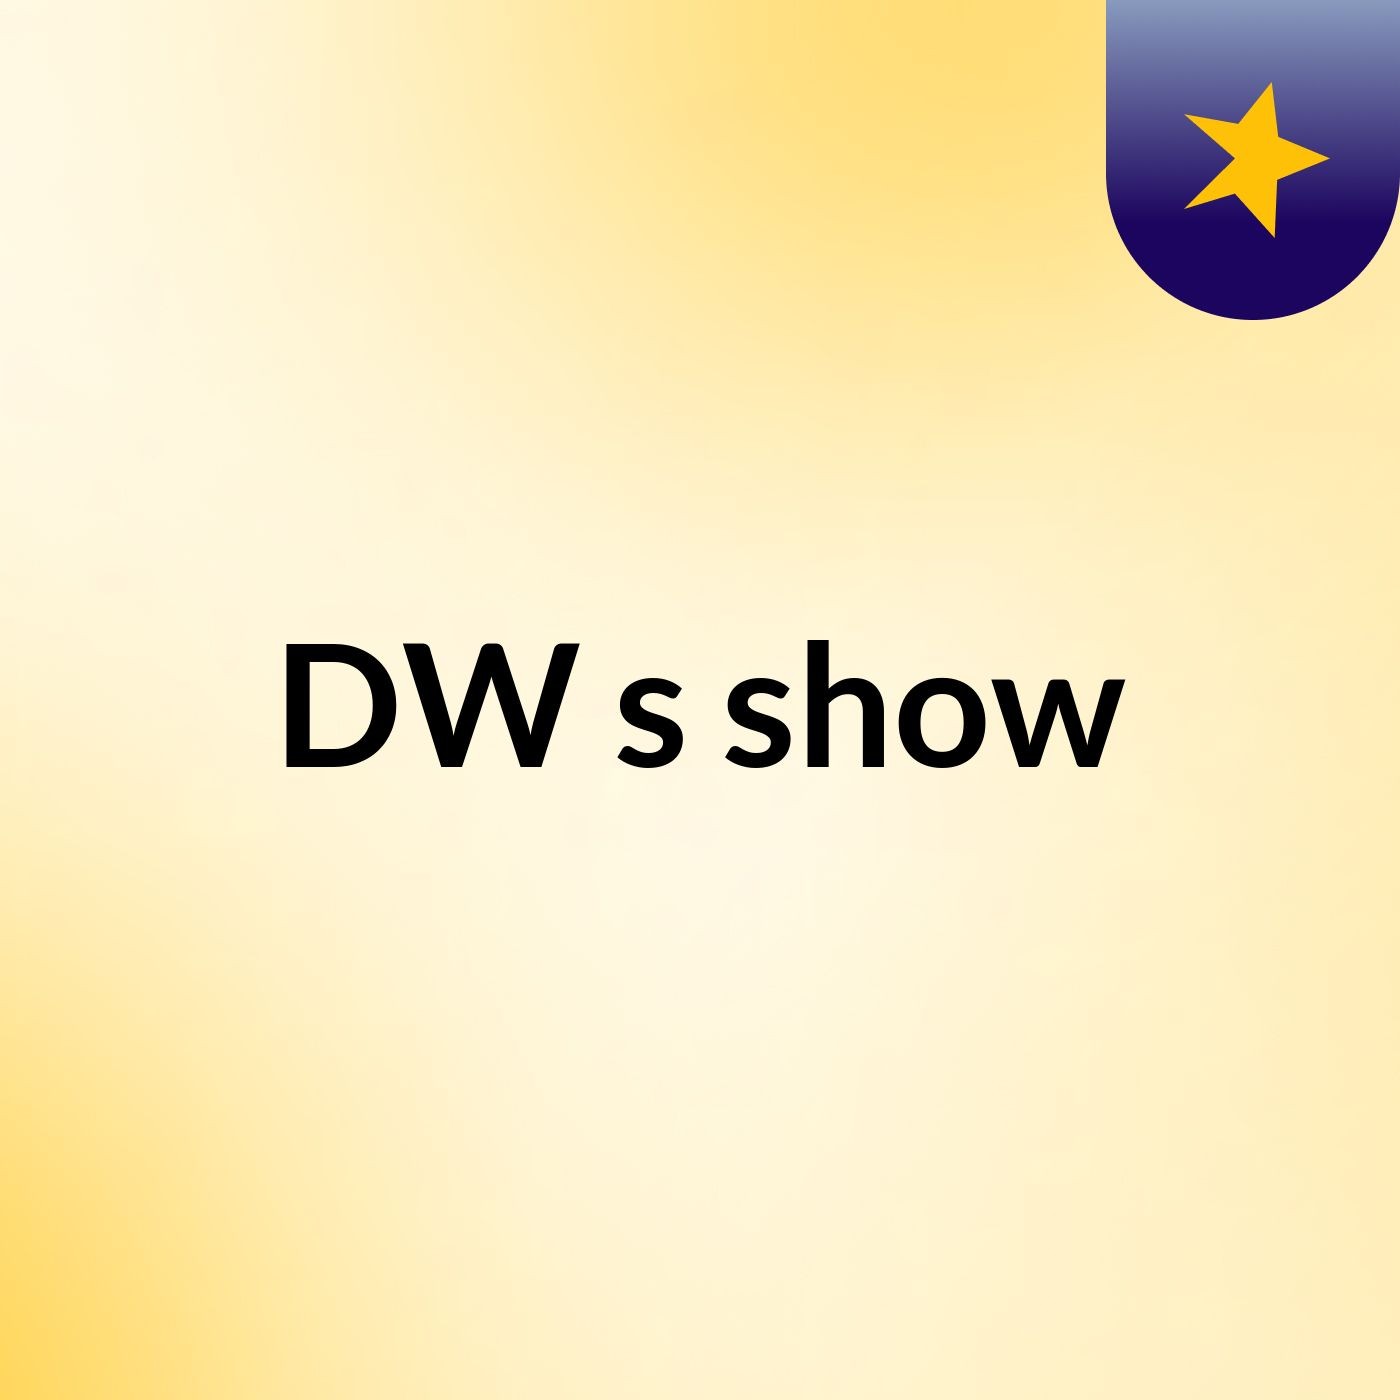 DW's show